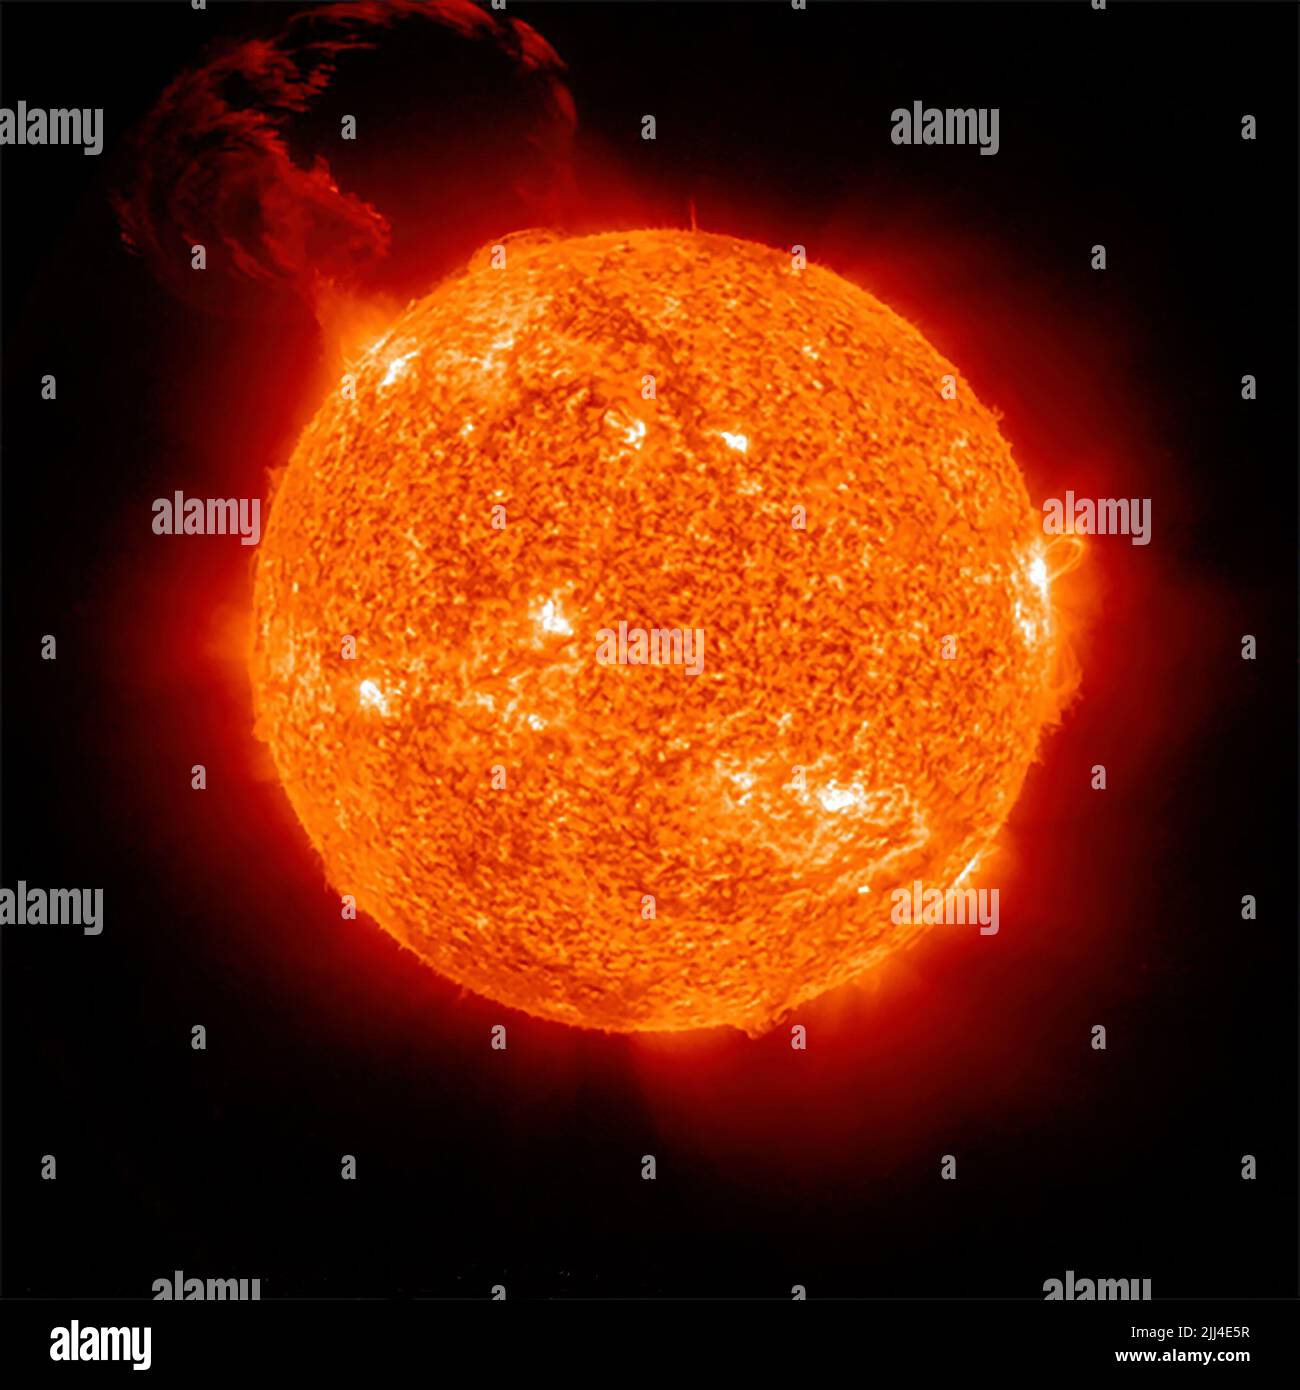 Il flare solare massiccio registrato da un Solar Ultrolet Imager (SUVI) il 22 febbraio 2022. Foto Stock